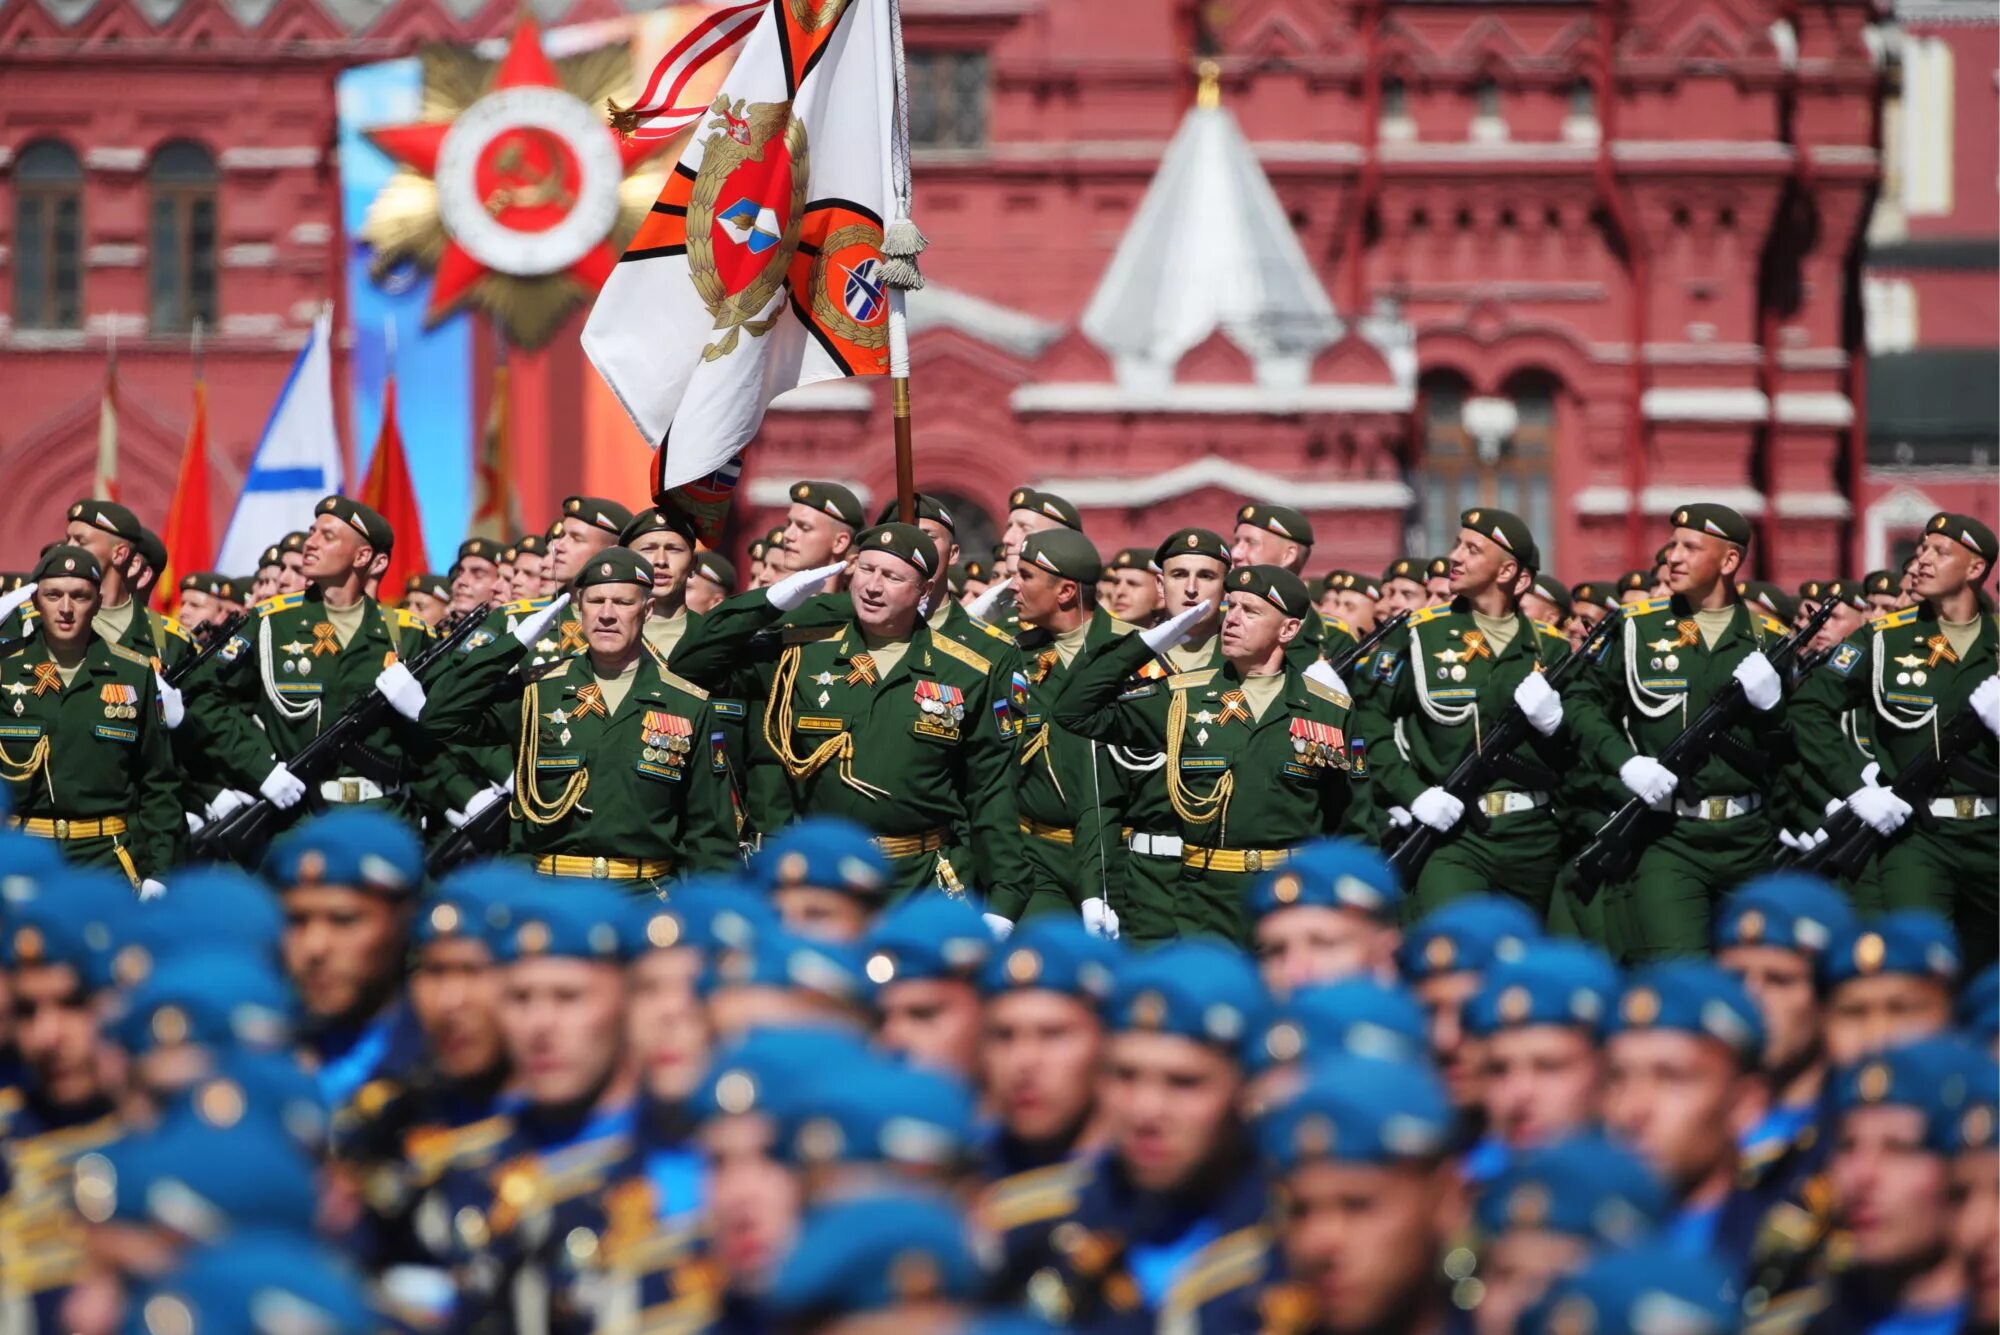 Что будет 23 февраля в москве. Парад на красной площади. Парад на 23 февраля в Москве. Солдаты на параде Победы. Парад неакрасный площади 23 февраля.